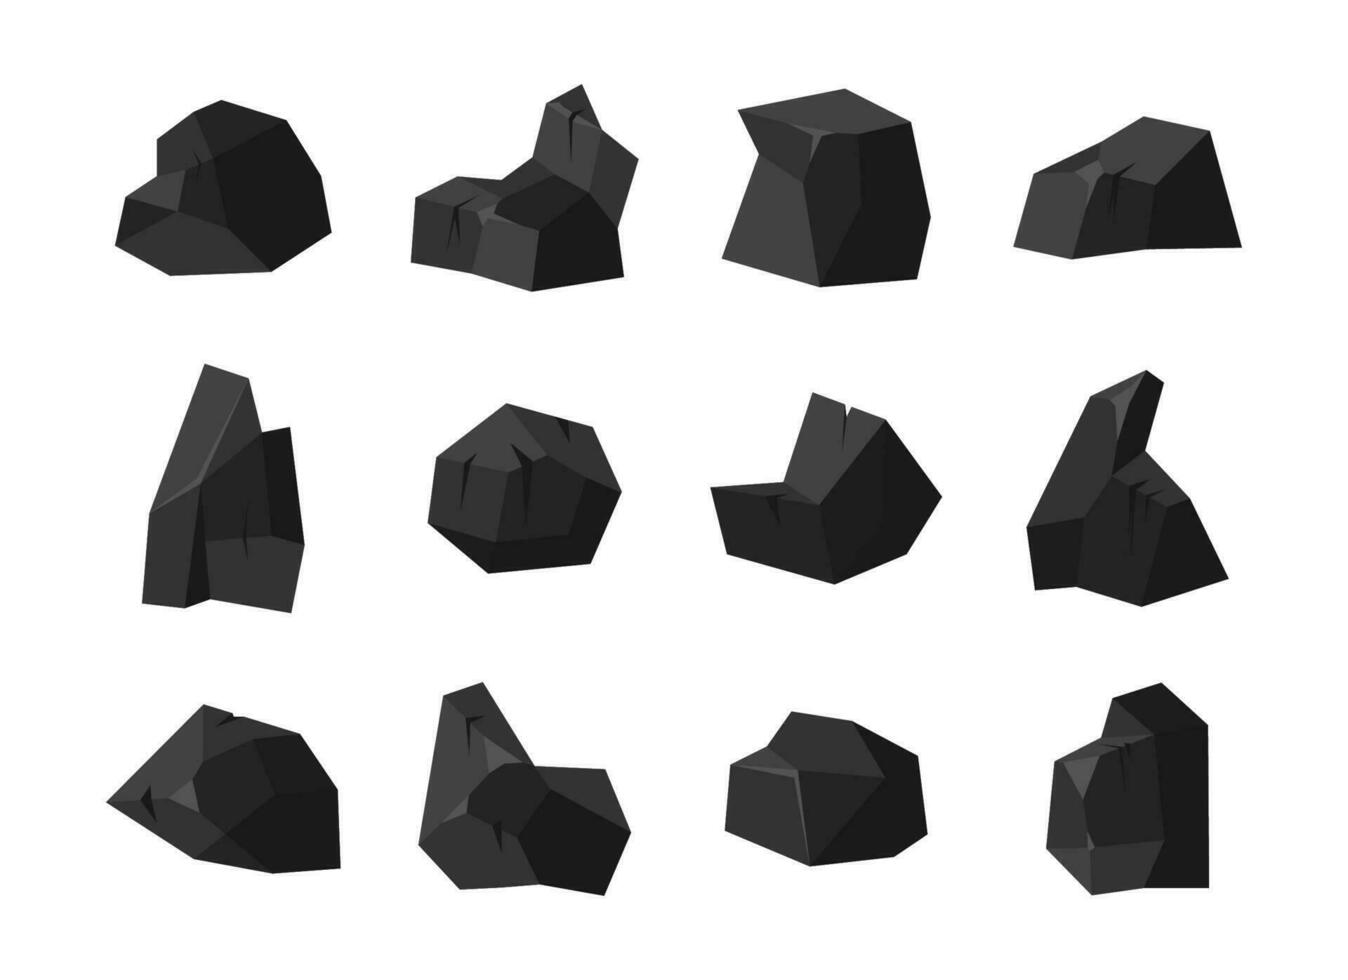 un' impostato di pezzi di fossile pietra nero carbone di vario forme con diverso illuminazione di il superficie. carbone isolato su bianca sfondo. vettore illustrazione.